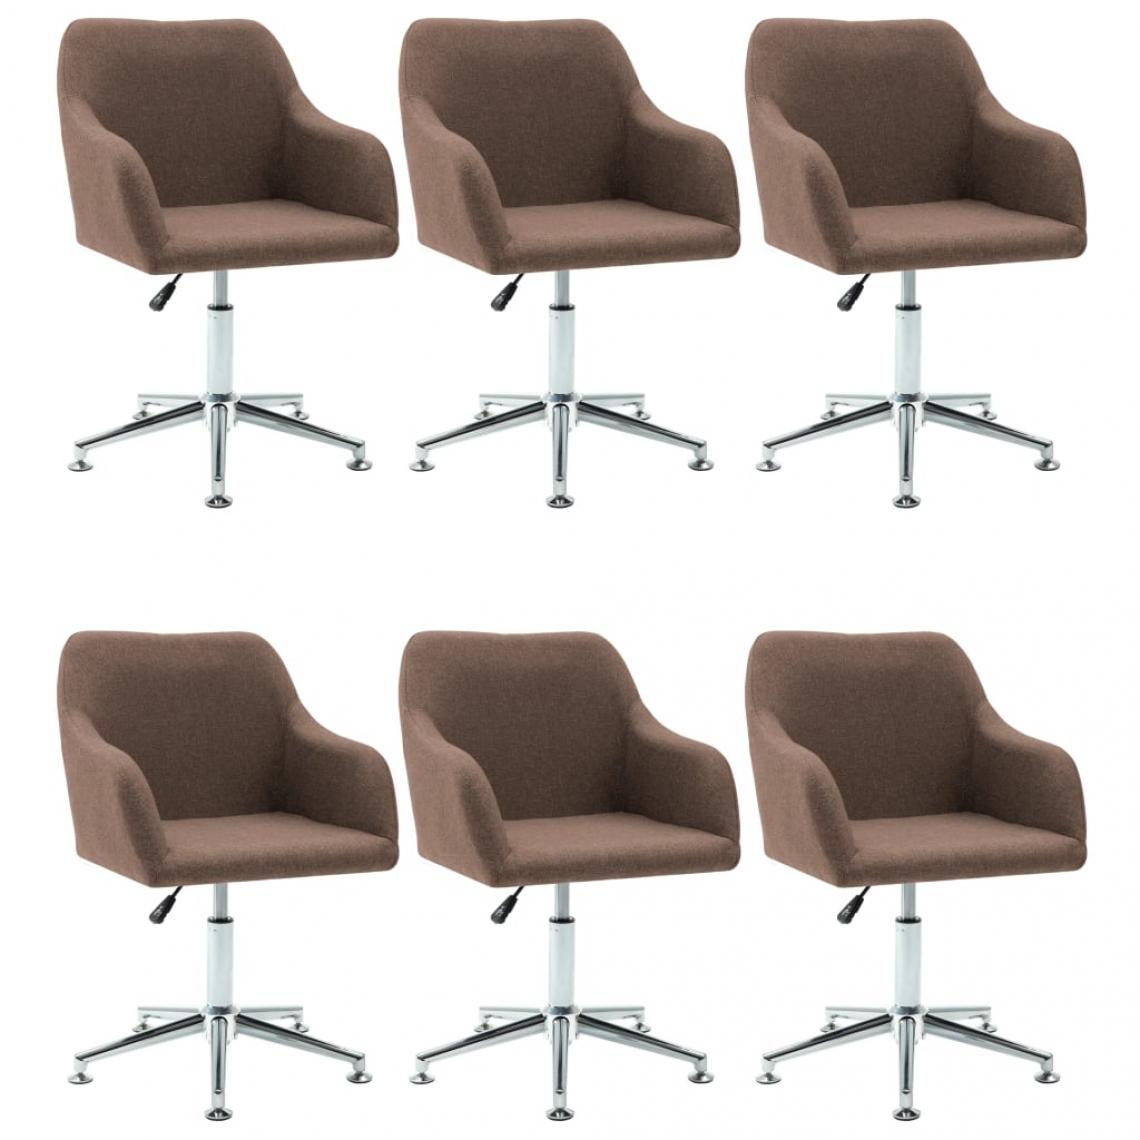 Decoshop26 - Lot de 6 chaises de salle à manger cuisine pivotantes design contemporain tissu marron CDS022761 - Chaises